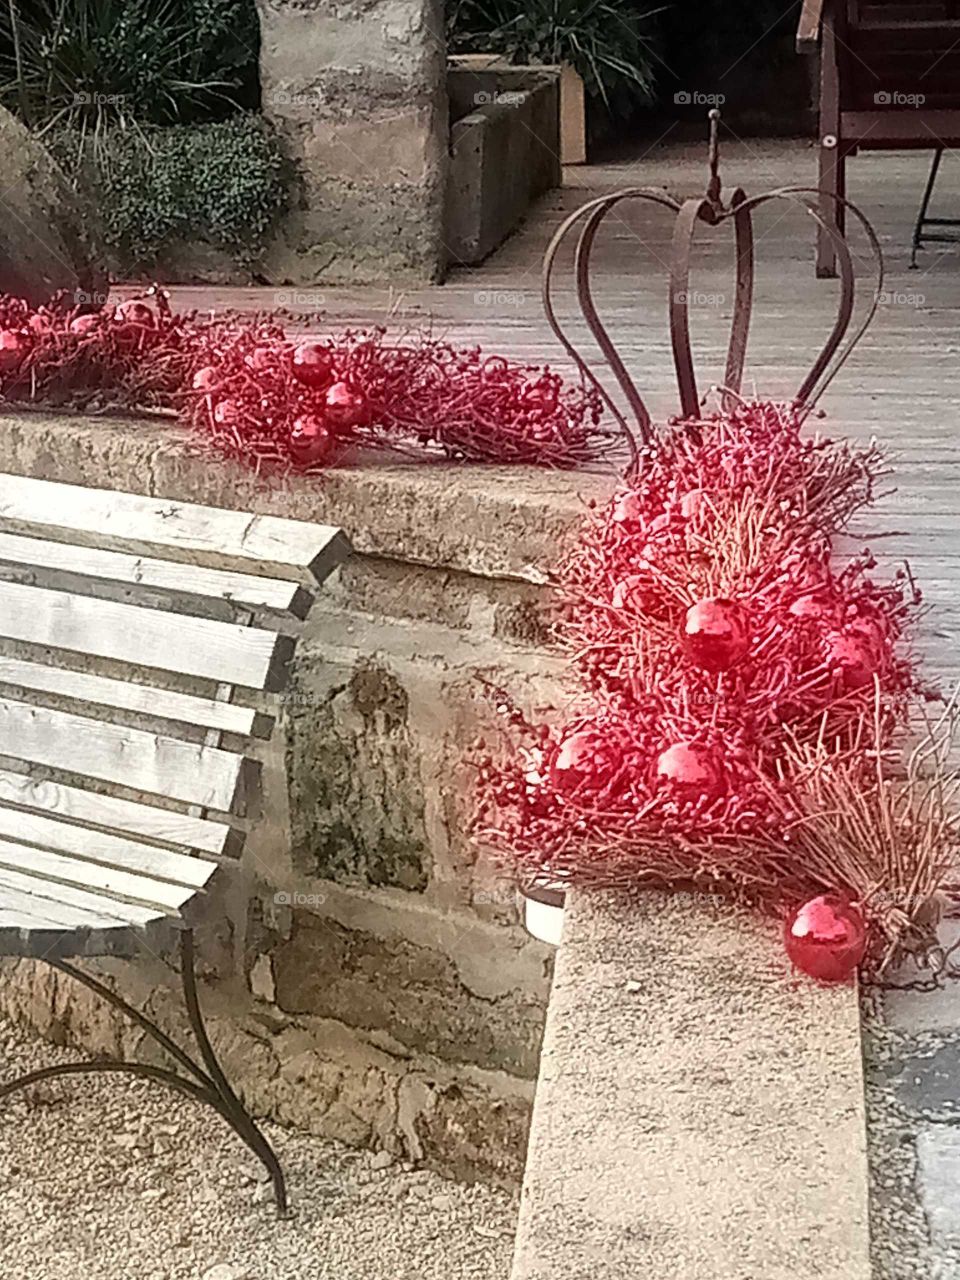 Weihnachts Deco ohne großen Schnickschnack,die Farbe Rose' der Kugeln beruhigend und edel